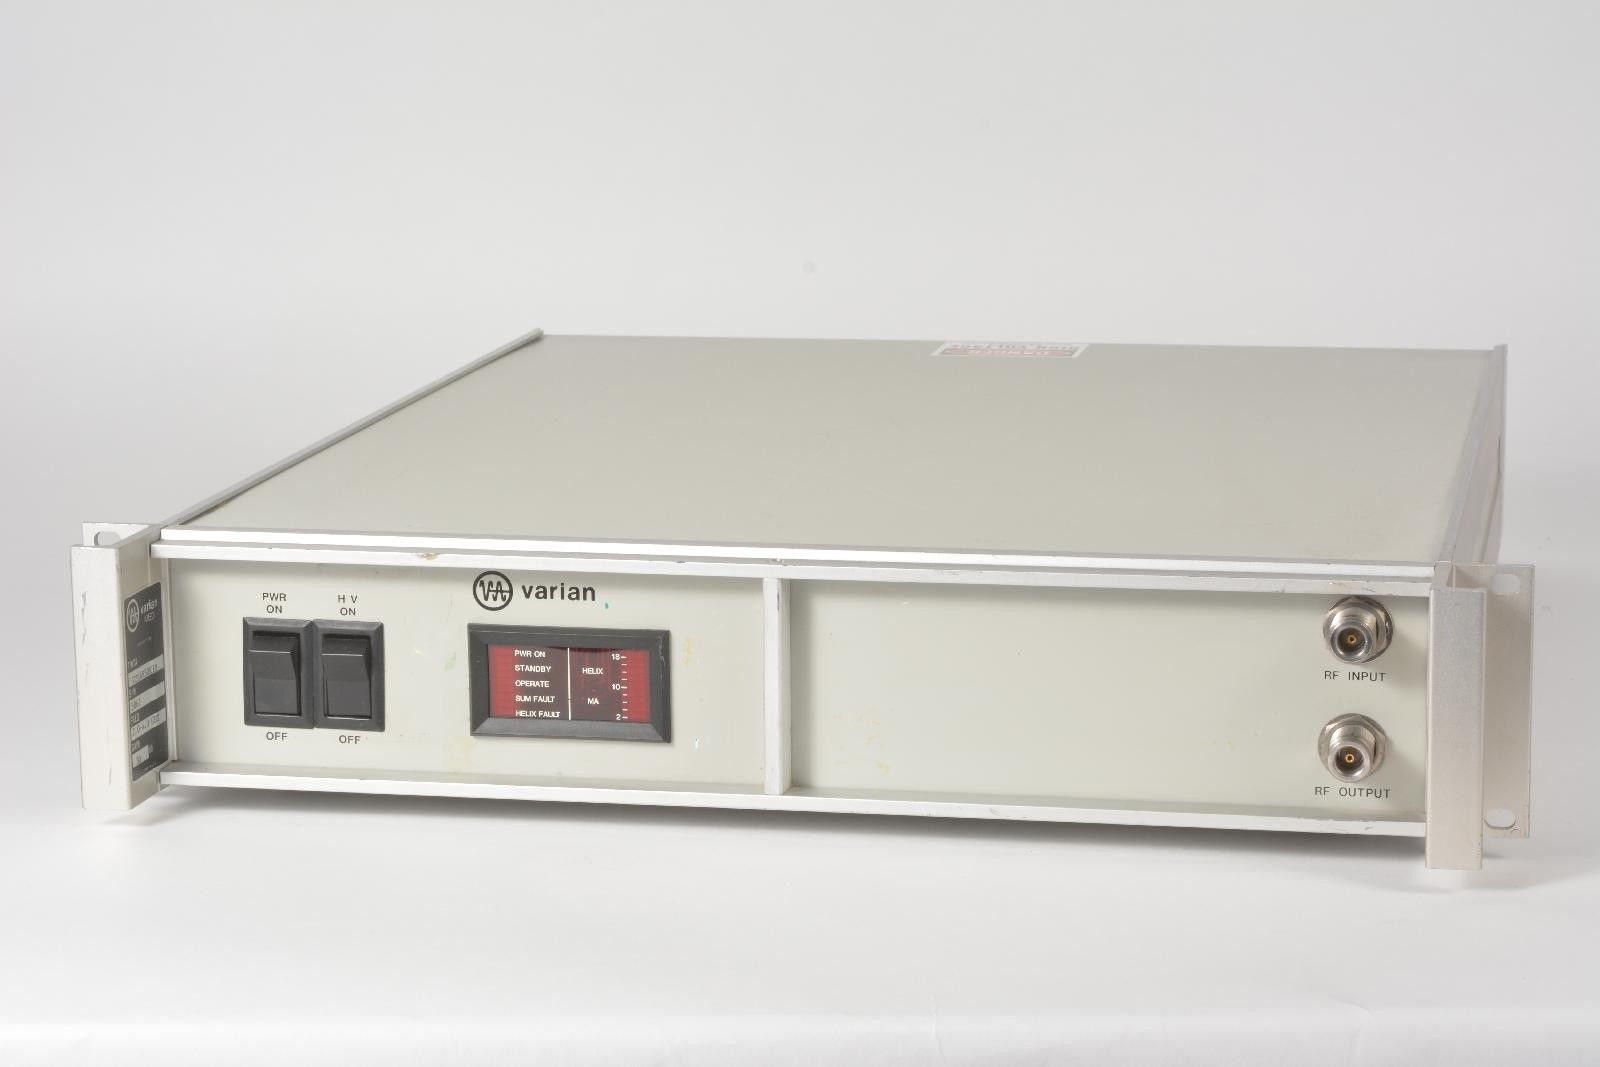 vstar-cpi-varian-twt-microwave-power-amplifier-2-0-4-0-ghz-used-equipment-for-sale-0.jpg